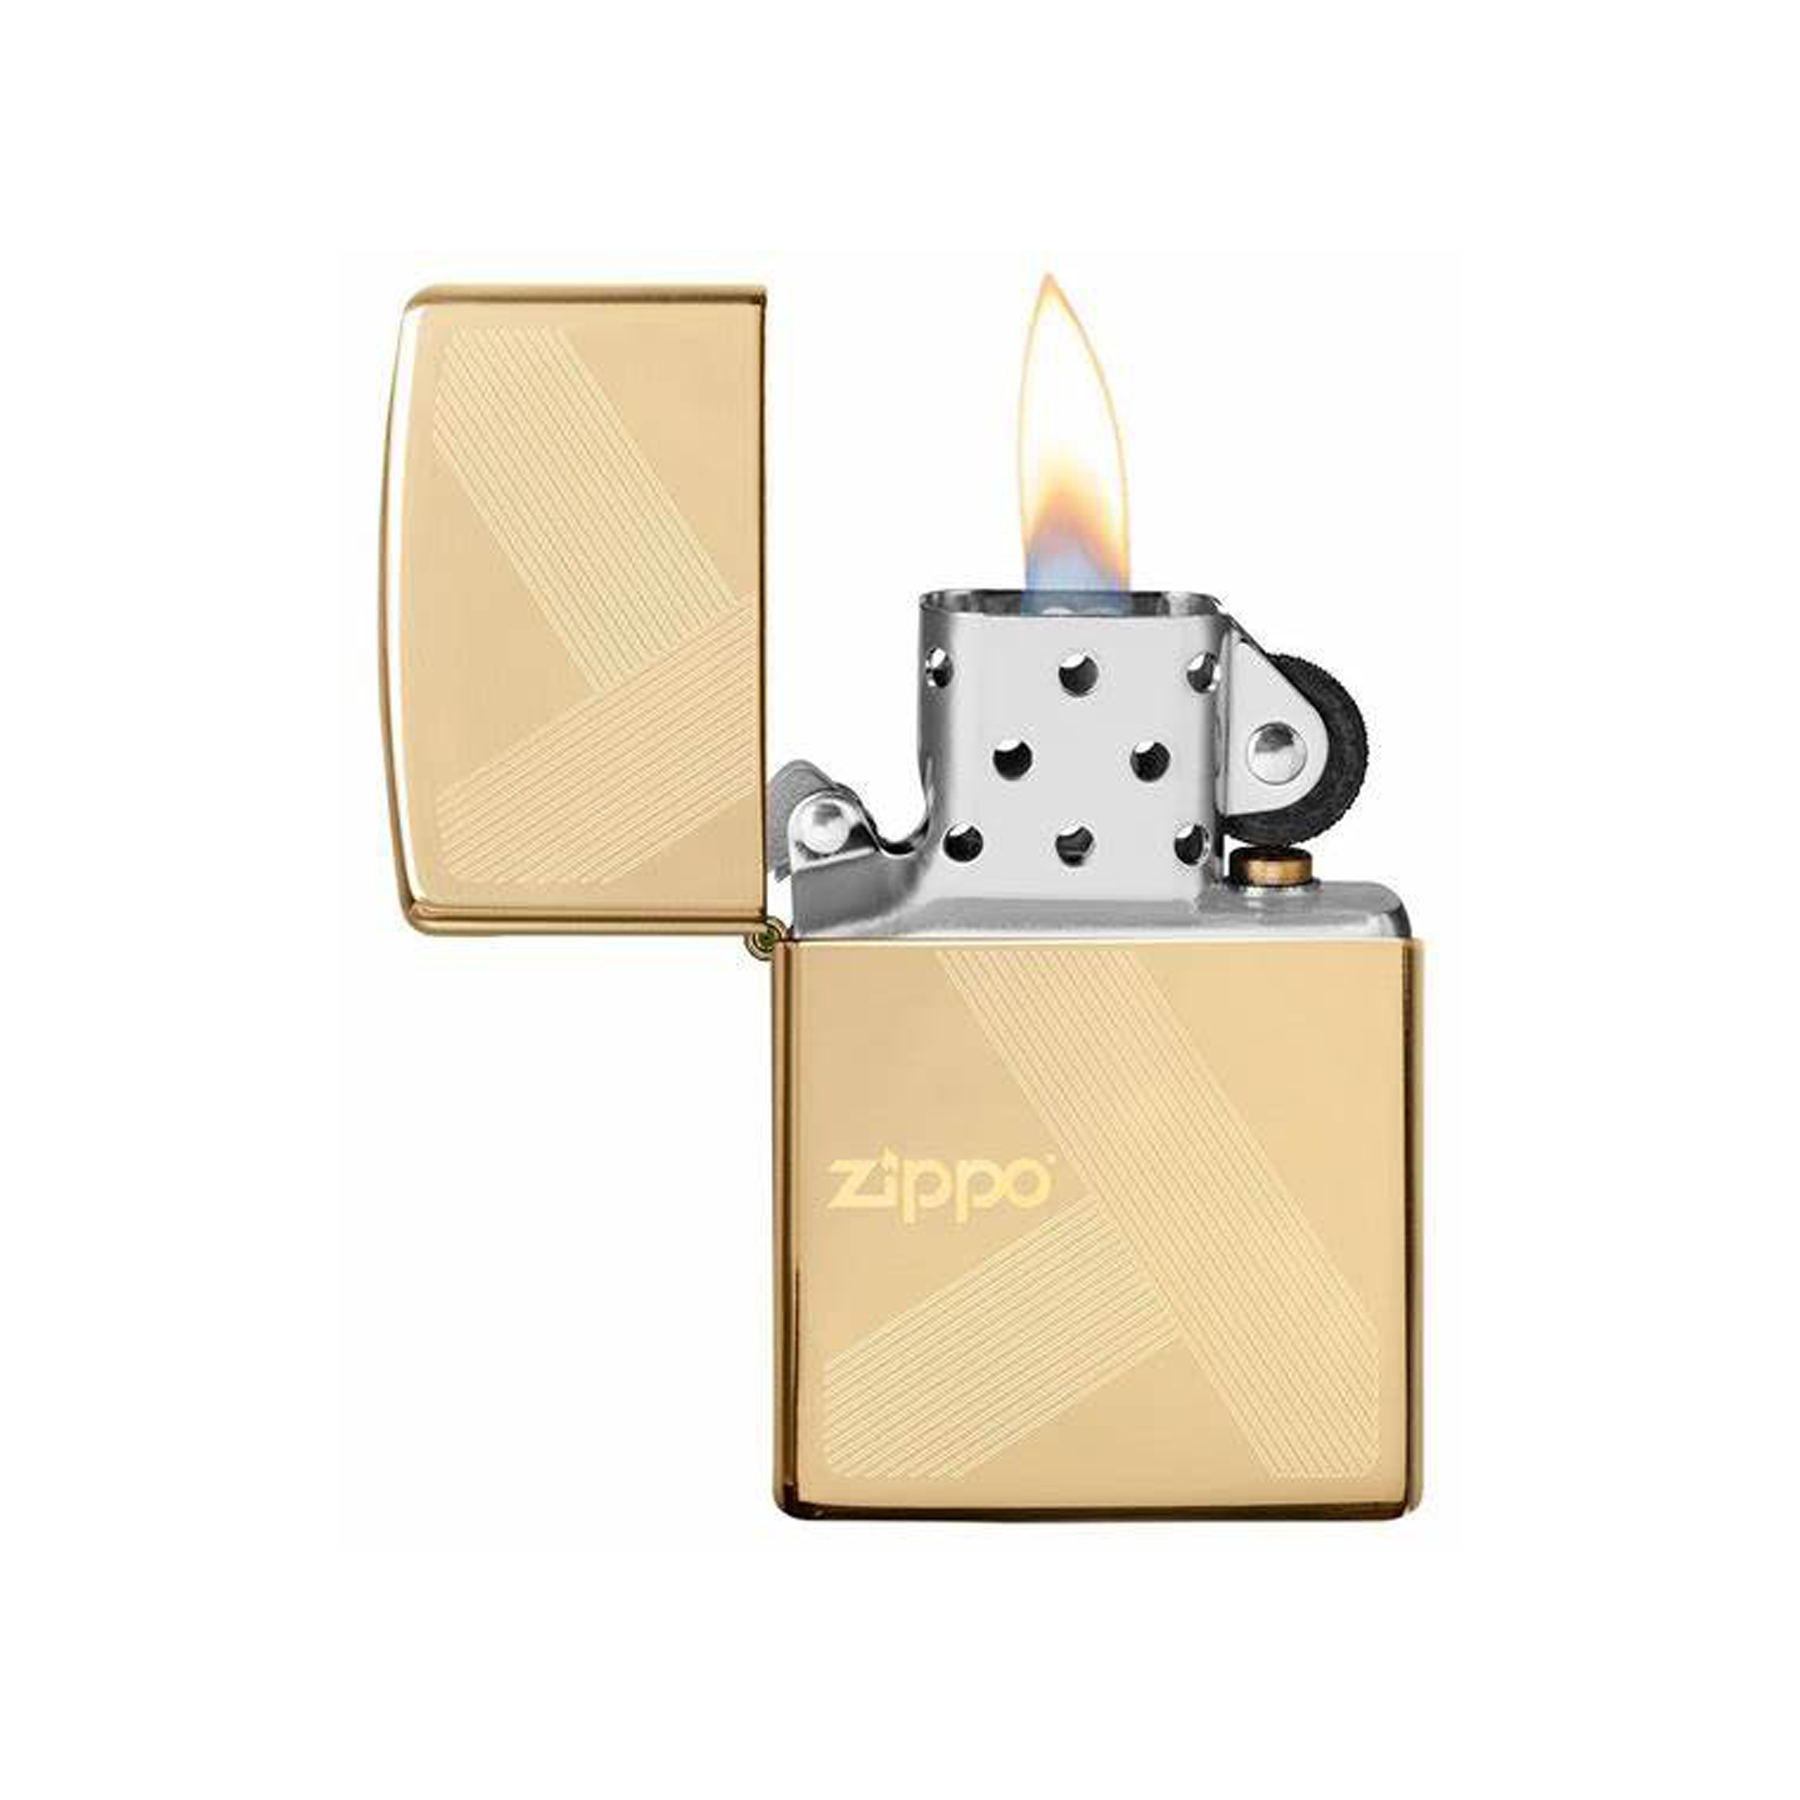 Zippo Design Lighter